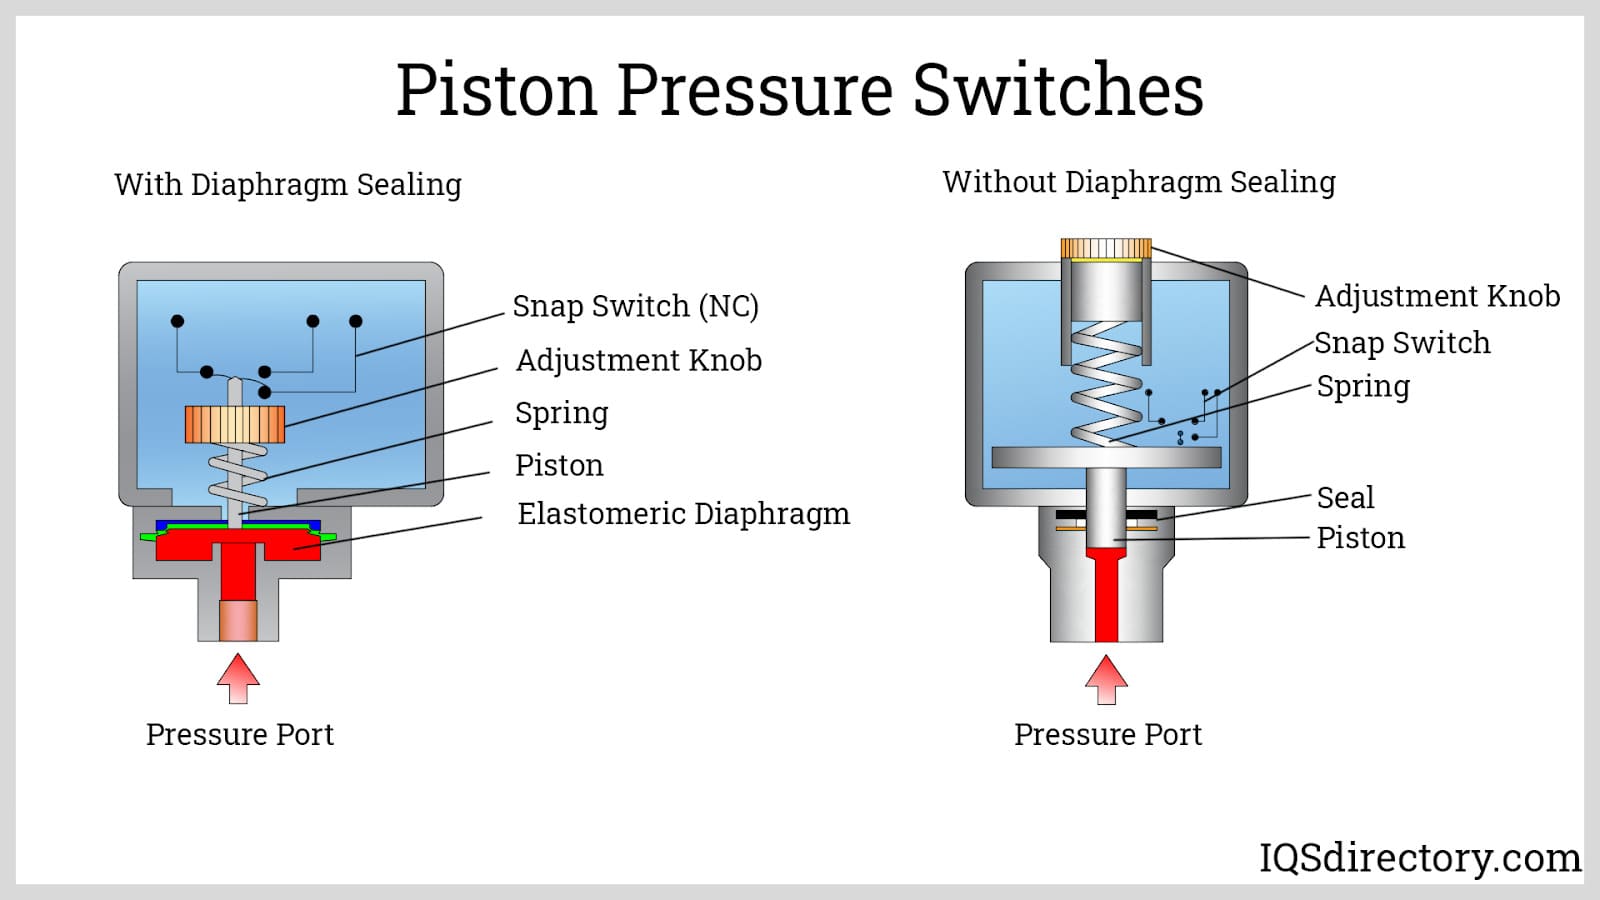 Piston Pressure Switches